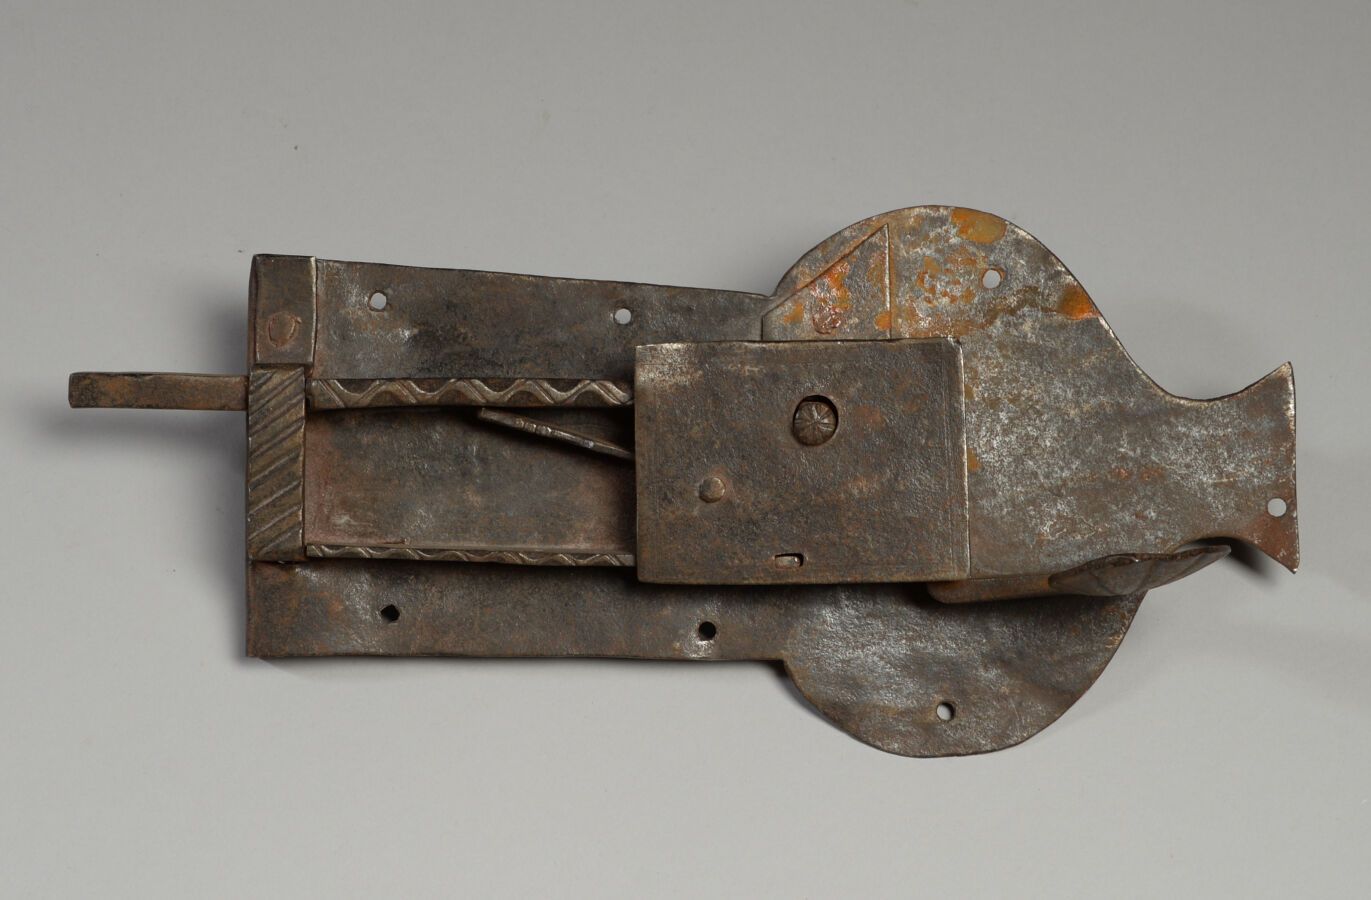 Null Serrure à loquet en fer forgé.
XVIIIème siècle
Haut. 14 - Long. 31 cm